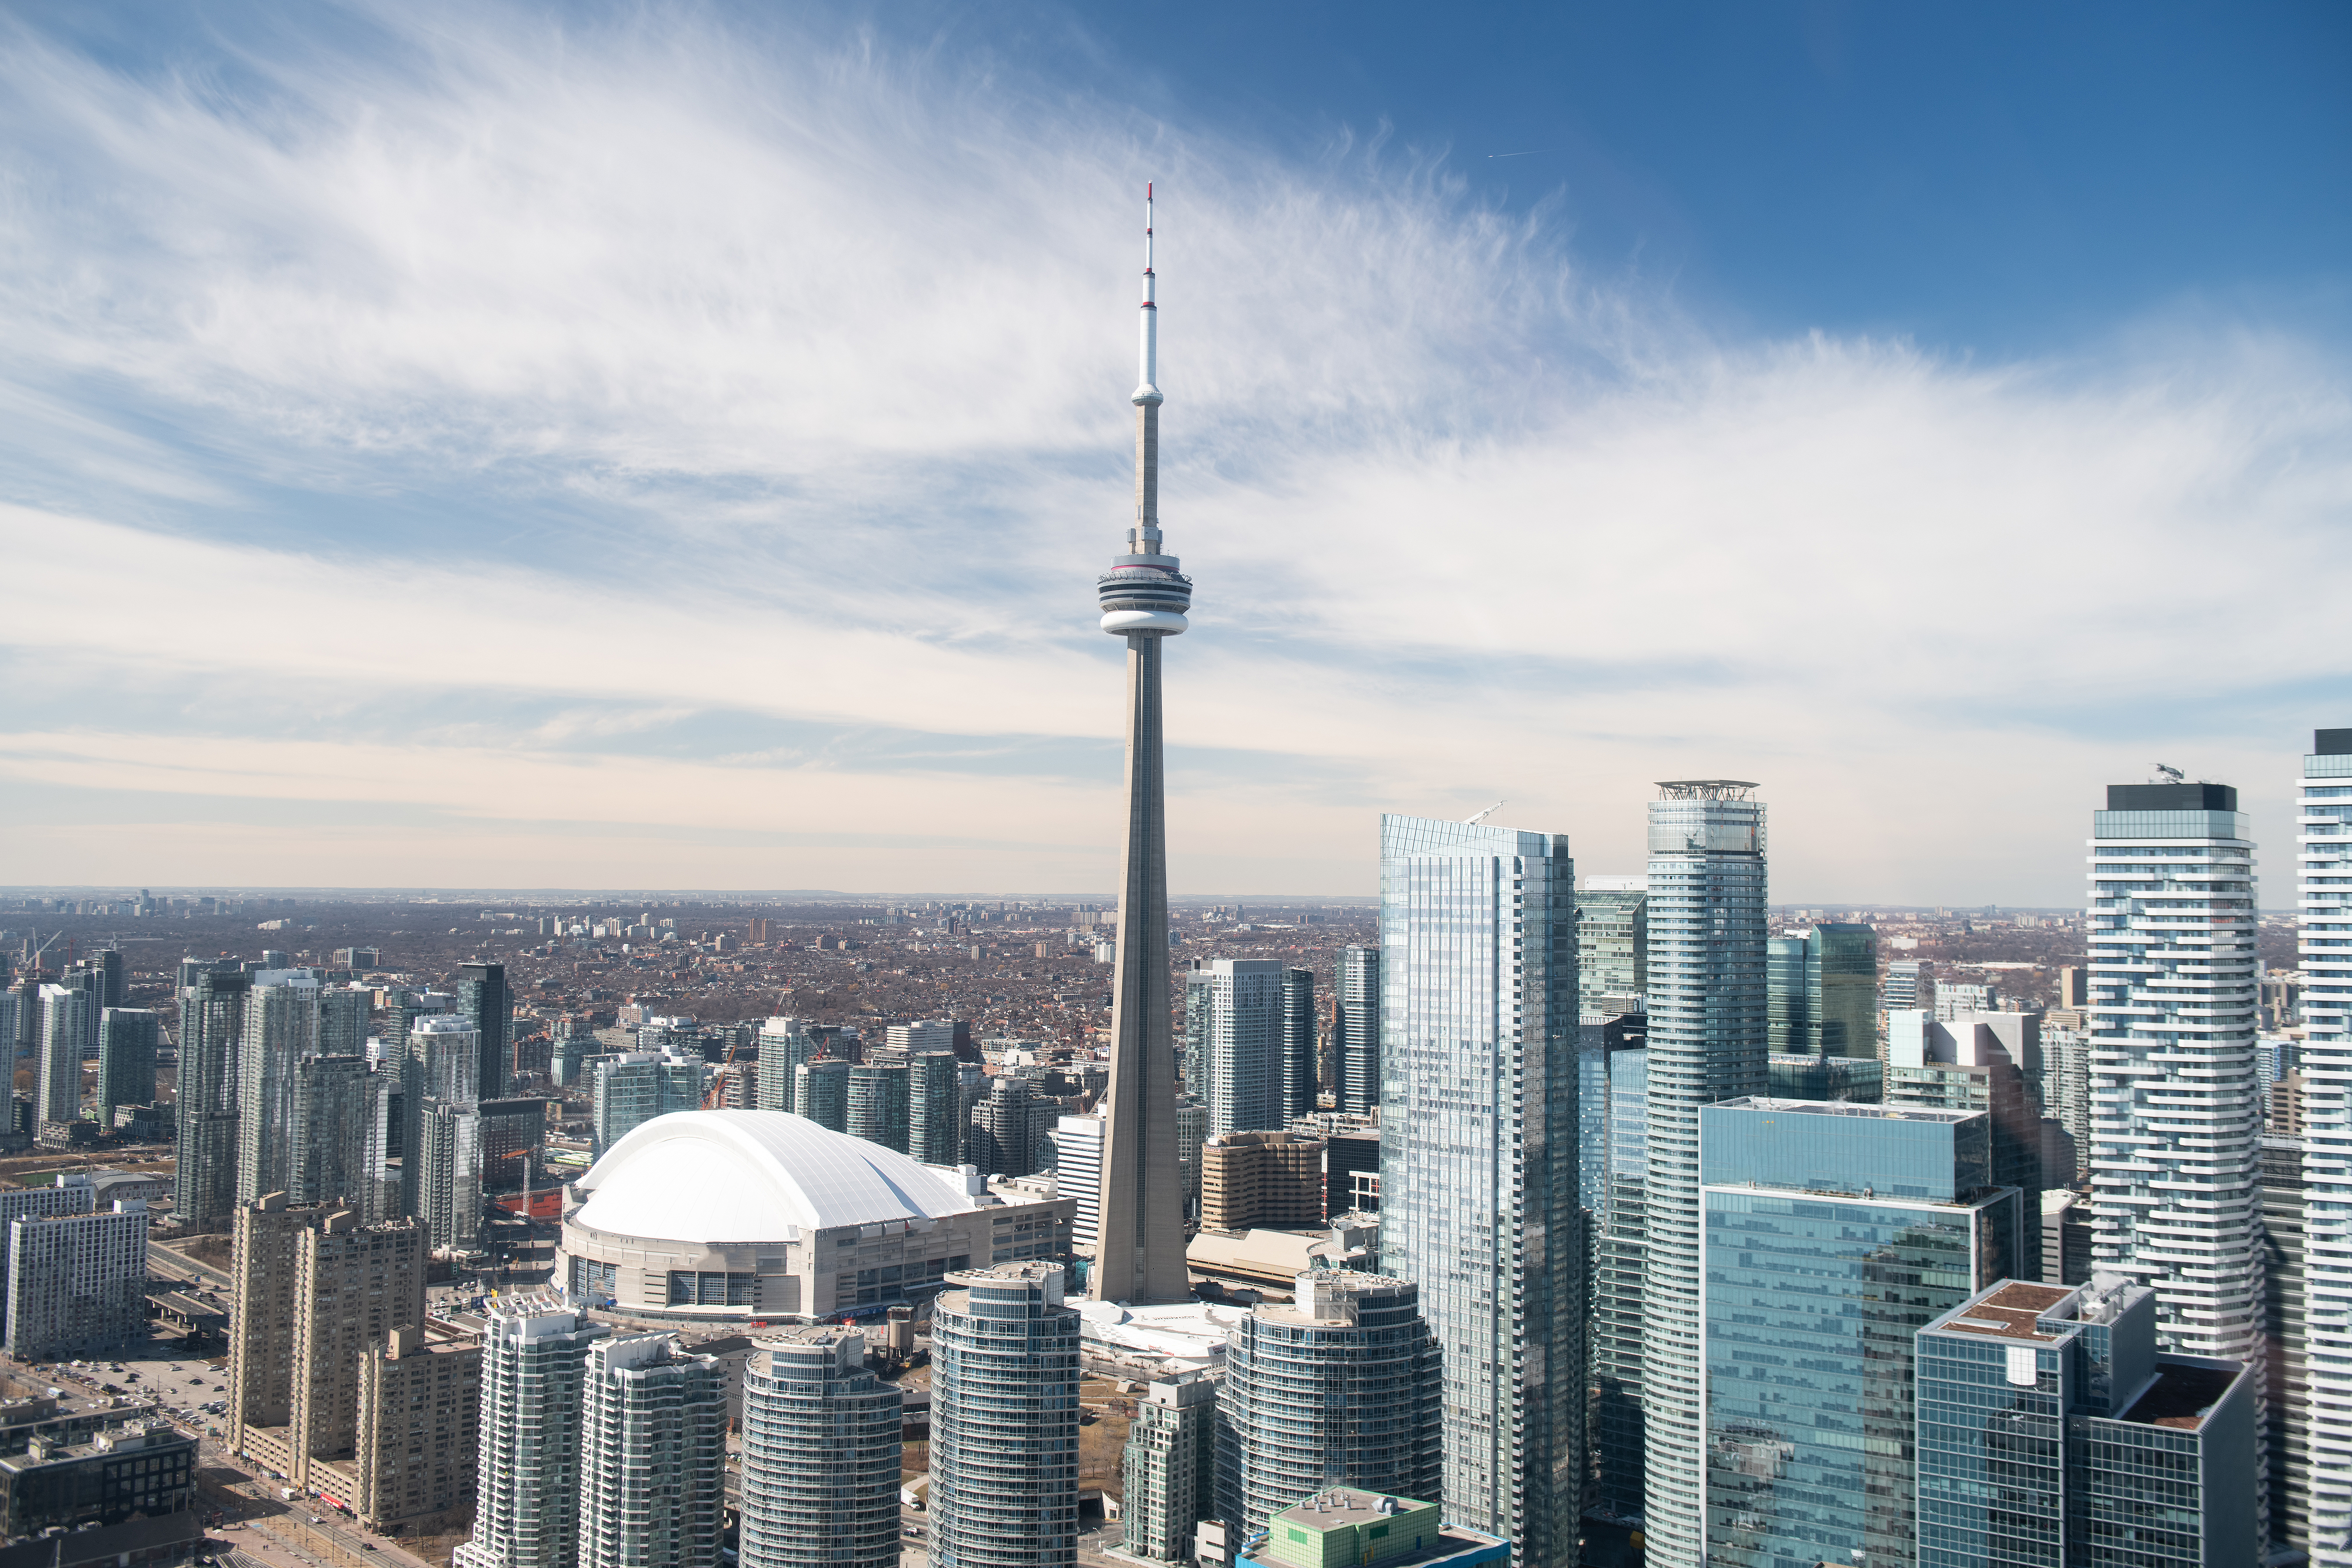 Aerial view of Toronto city skyline, Canada